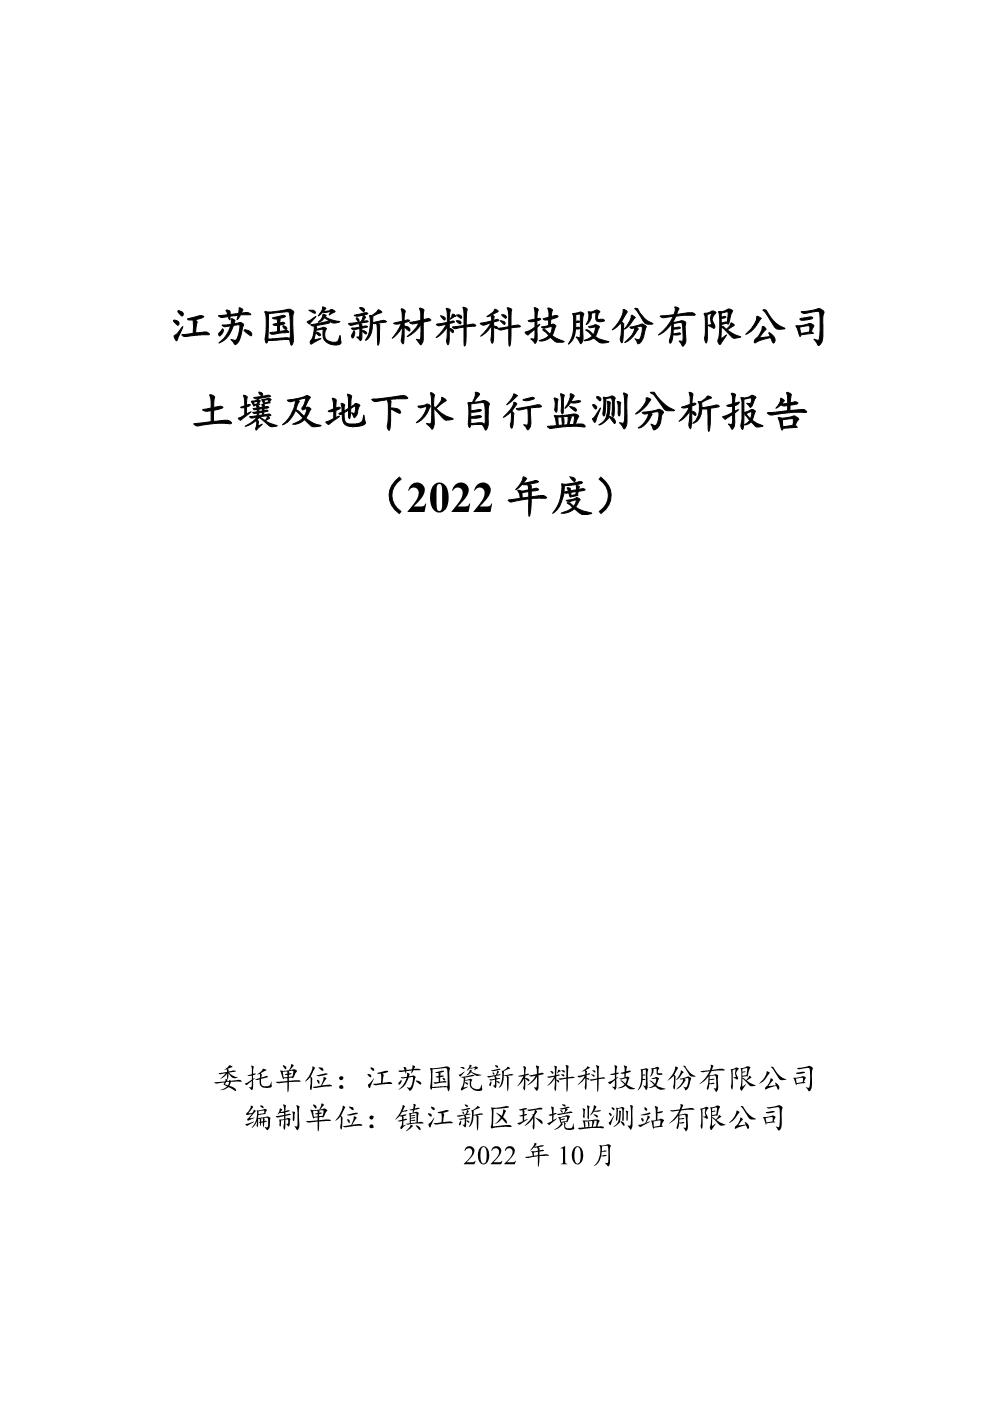 江苏国瓷新材料科技股份有限公司土壤及地下水自行监测分析报告2022（定稿）